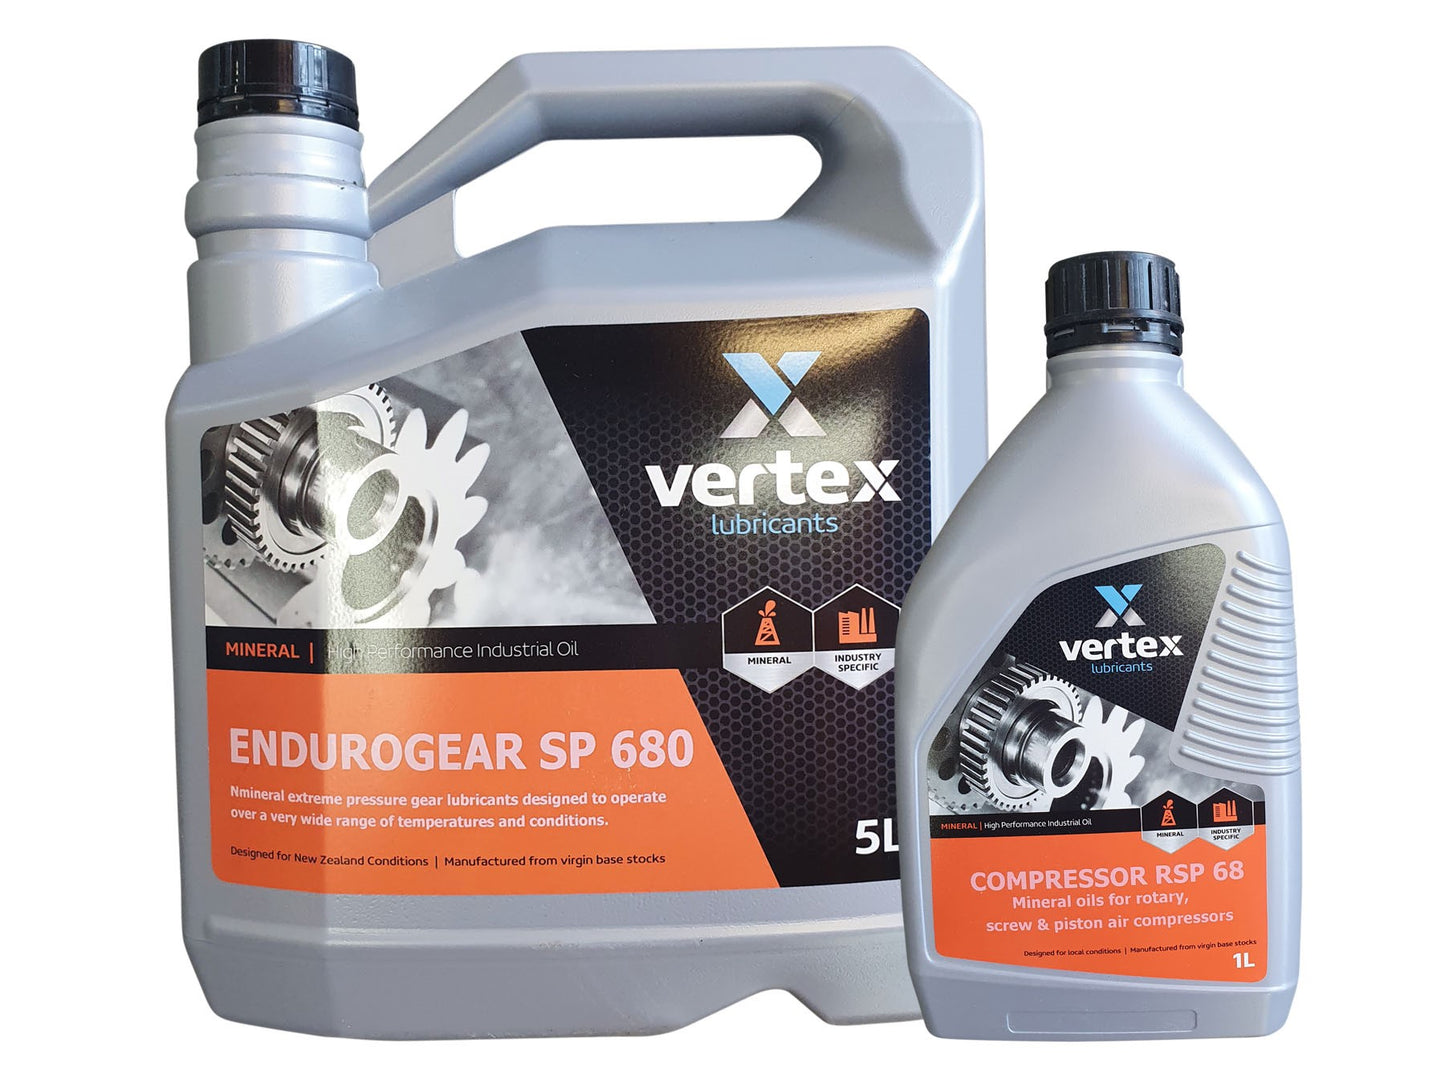 Vertex Compressor RSP 68 Oil